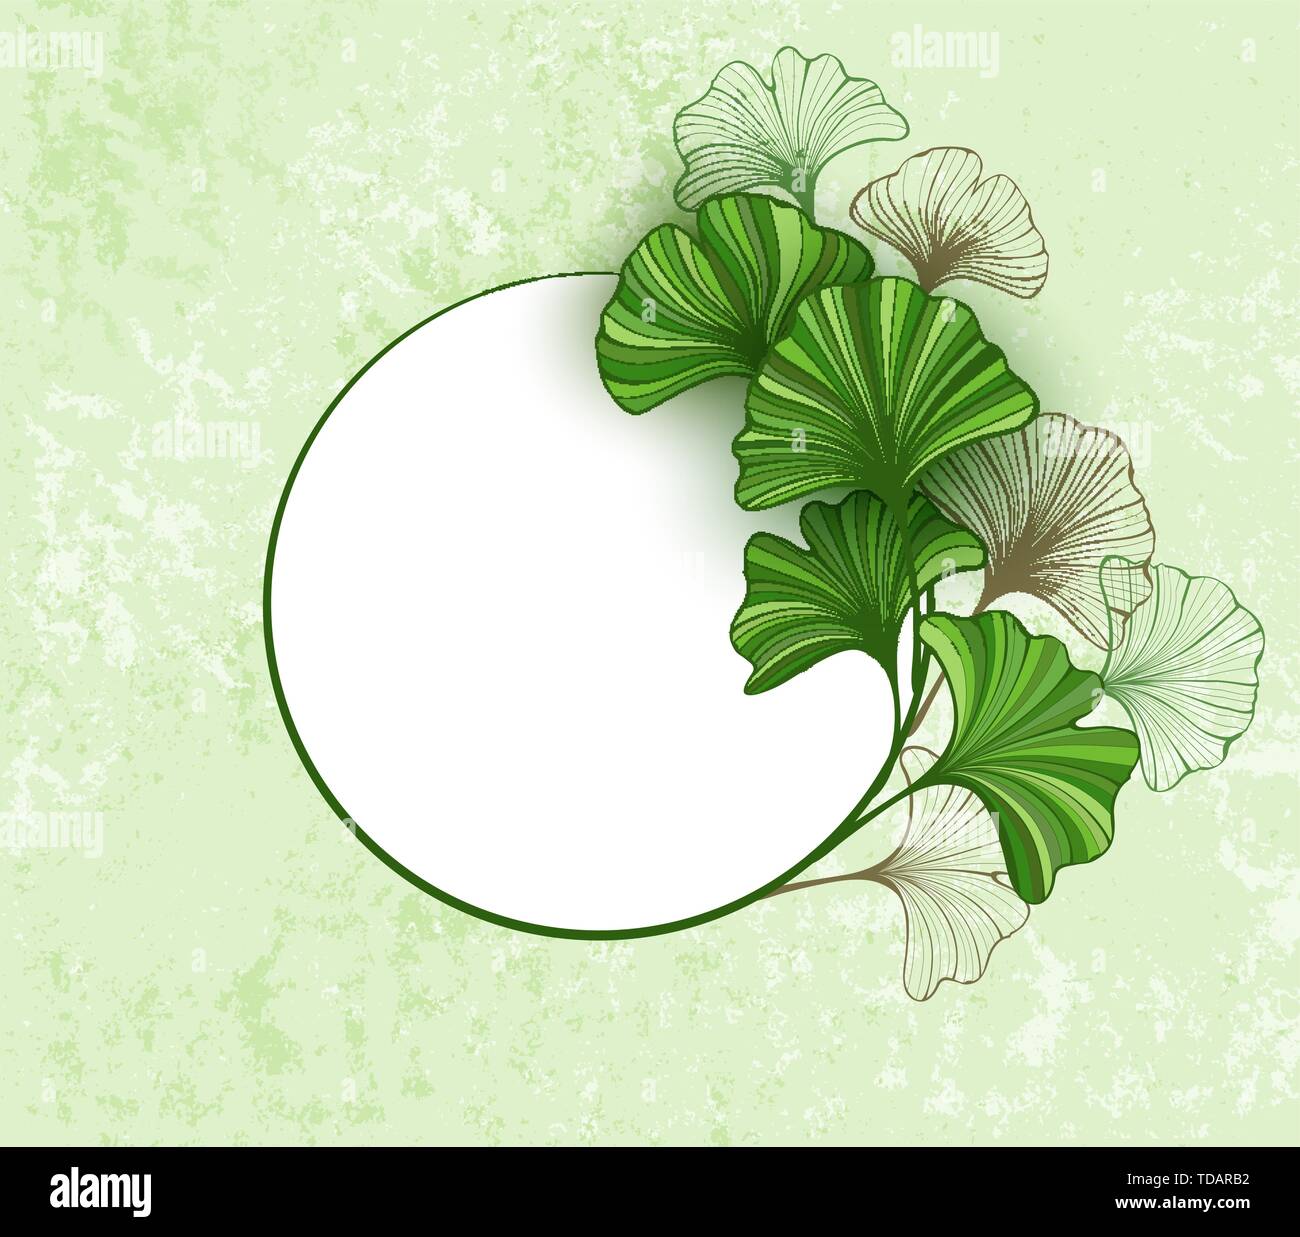 Bannière ronde avec green, stylisé et contour marron feuilles de ginkgo biloba sur papier texturé, arrière-plan. Illustration de Vecteur